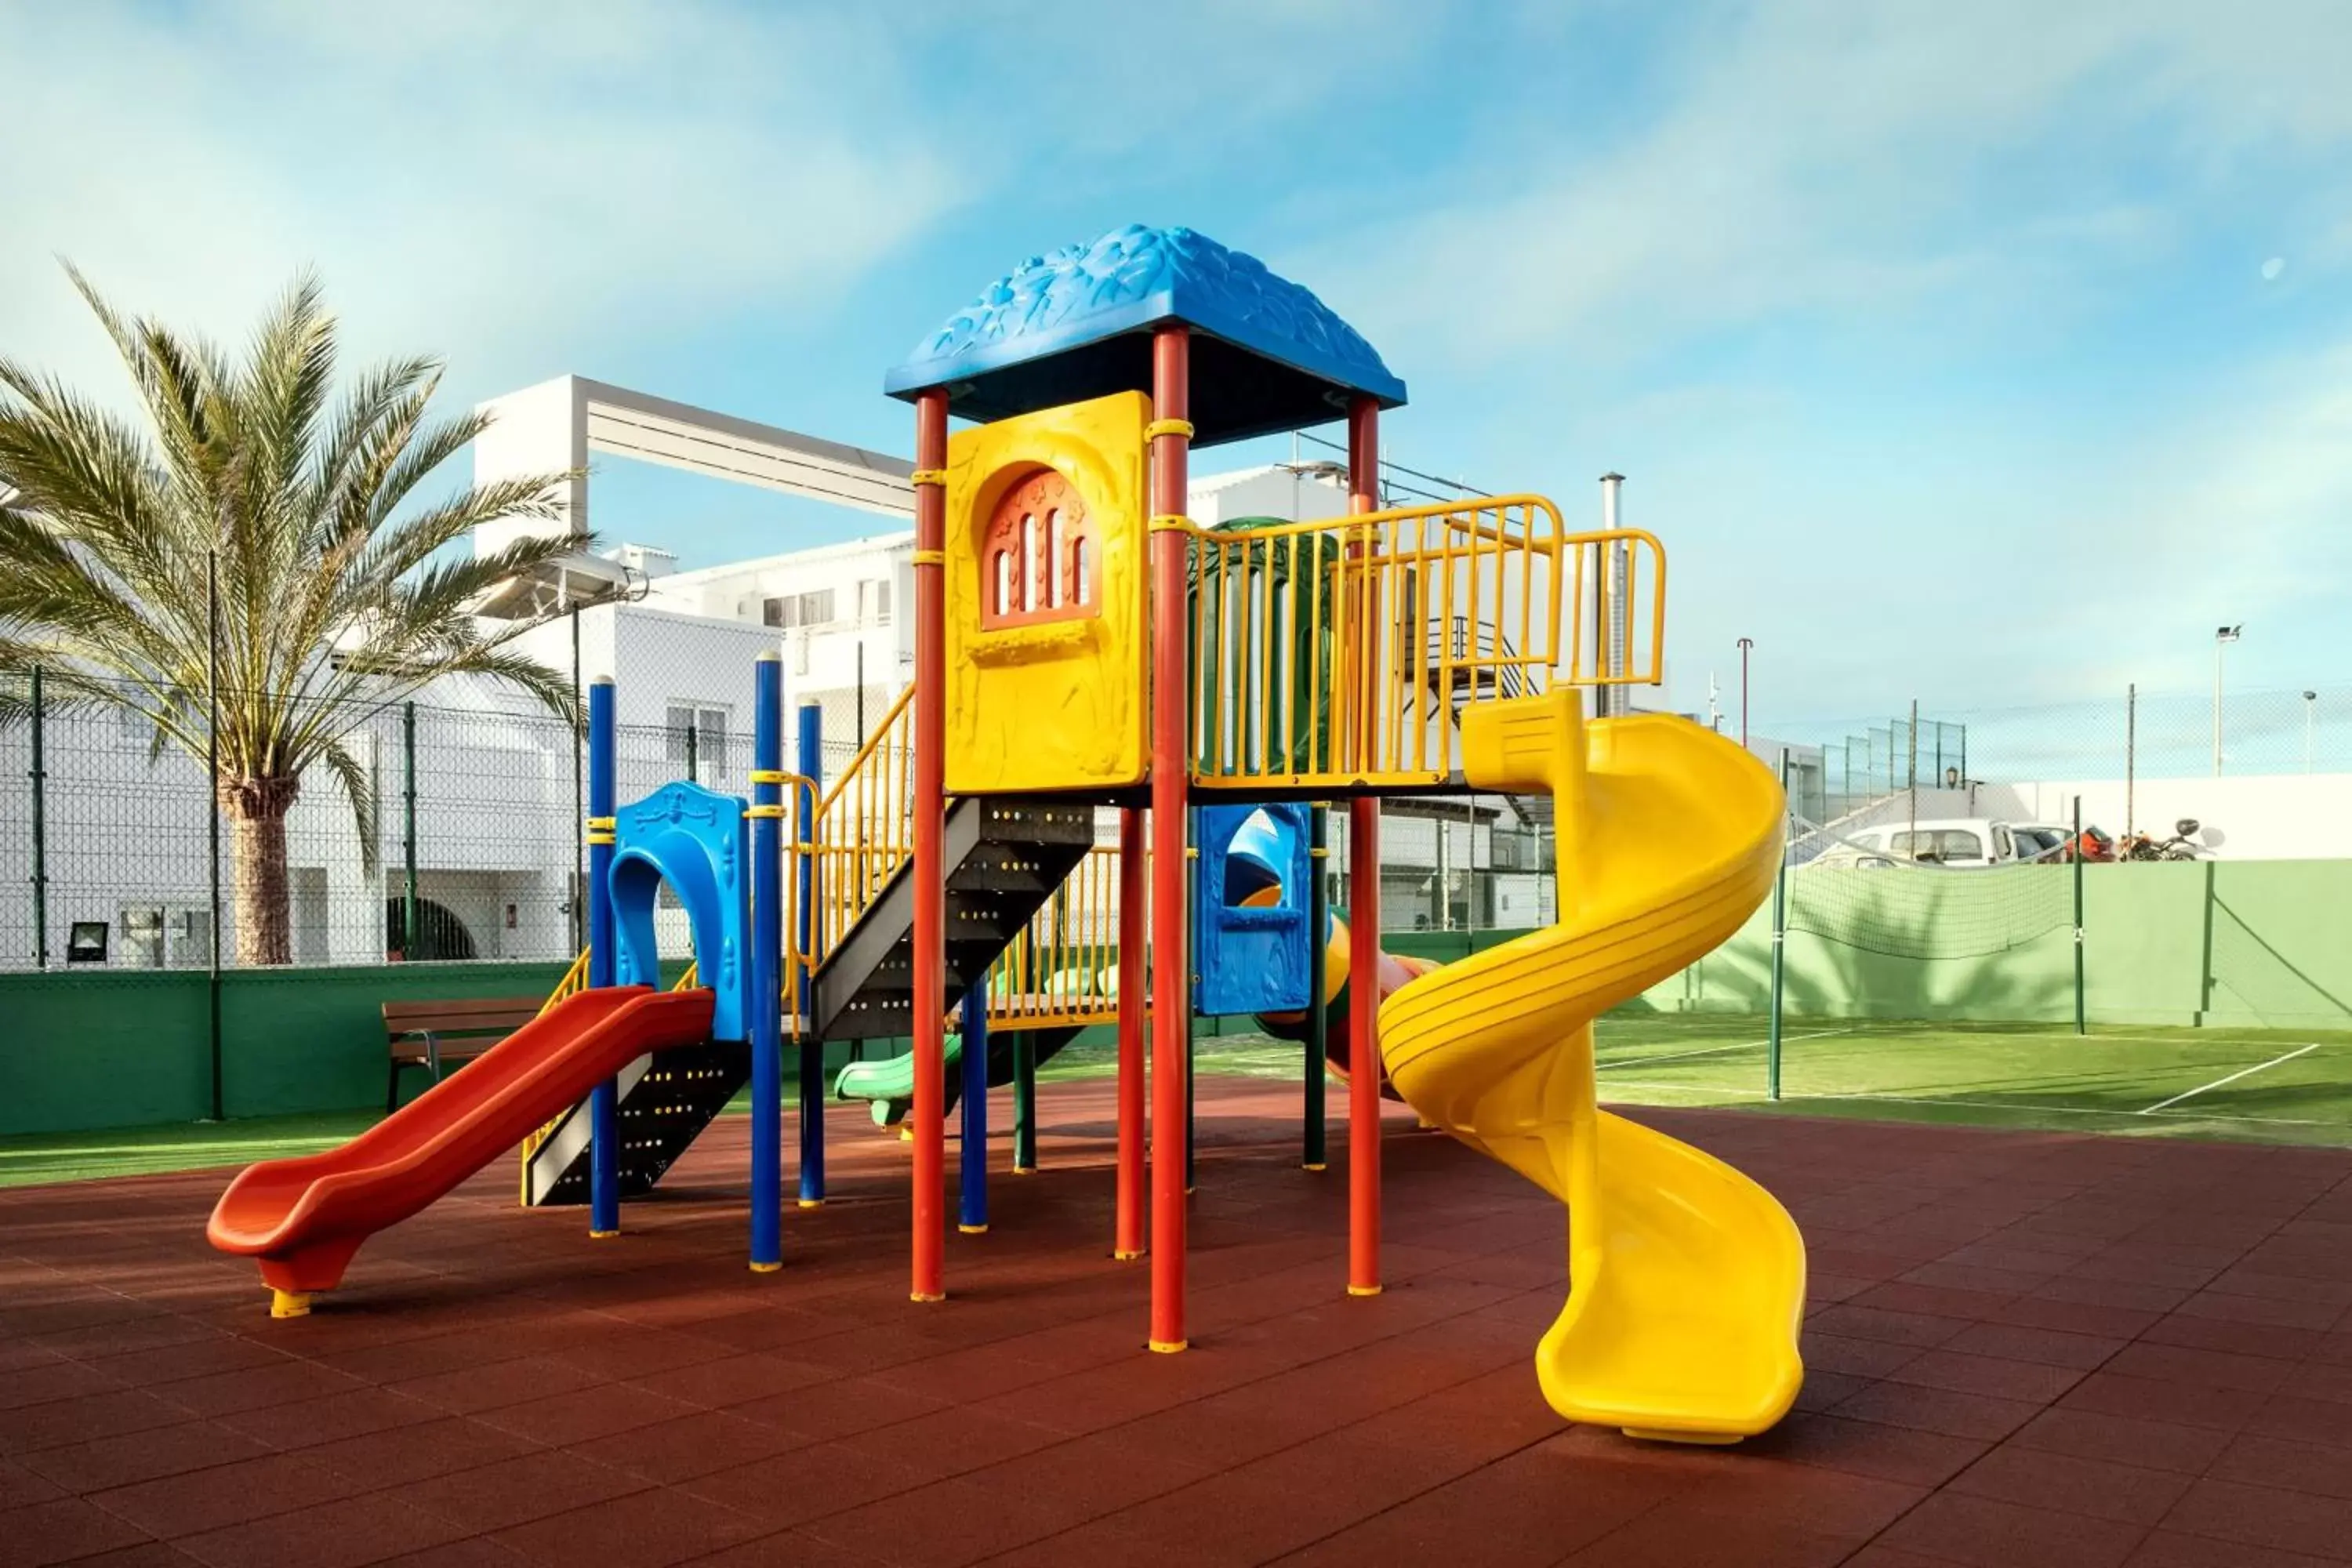 Children's Play Area in Playa Park Zensation